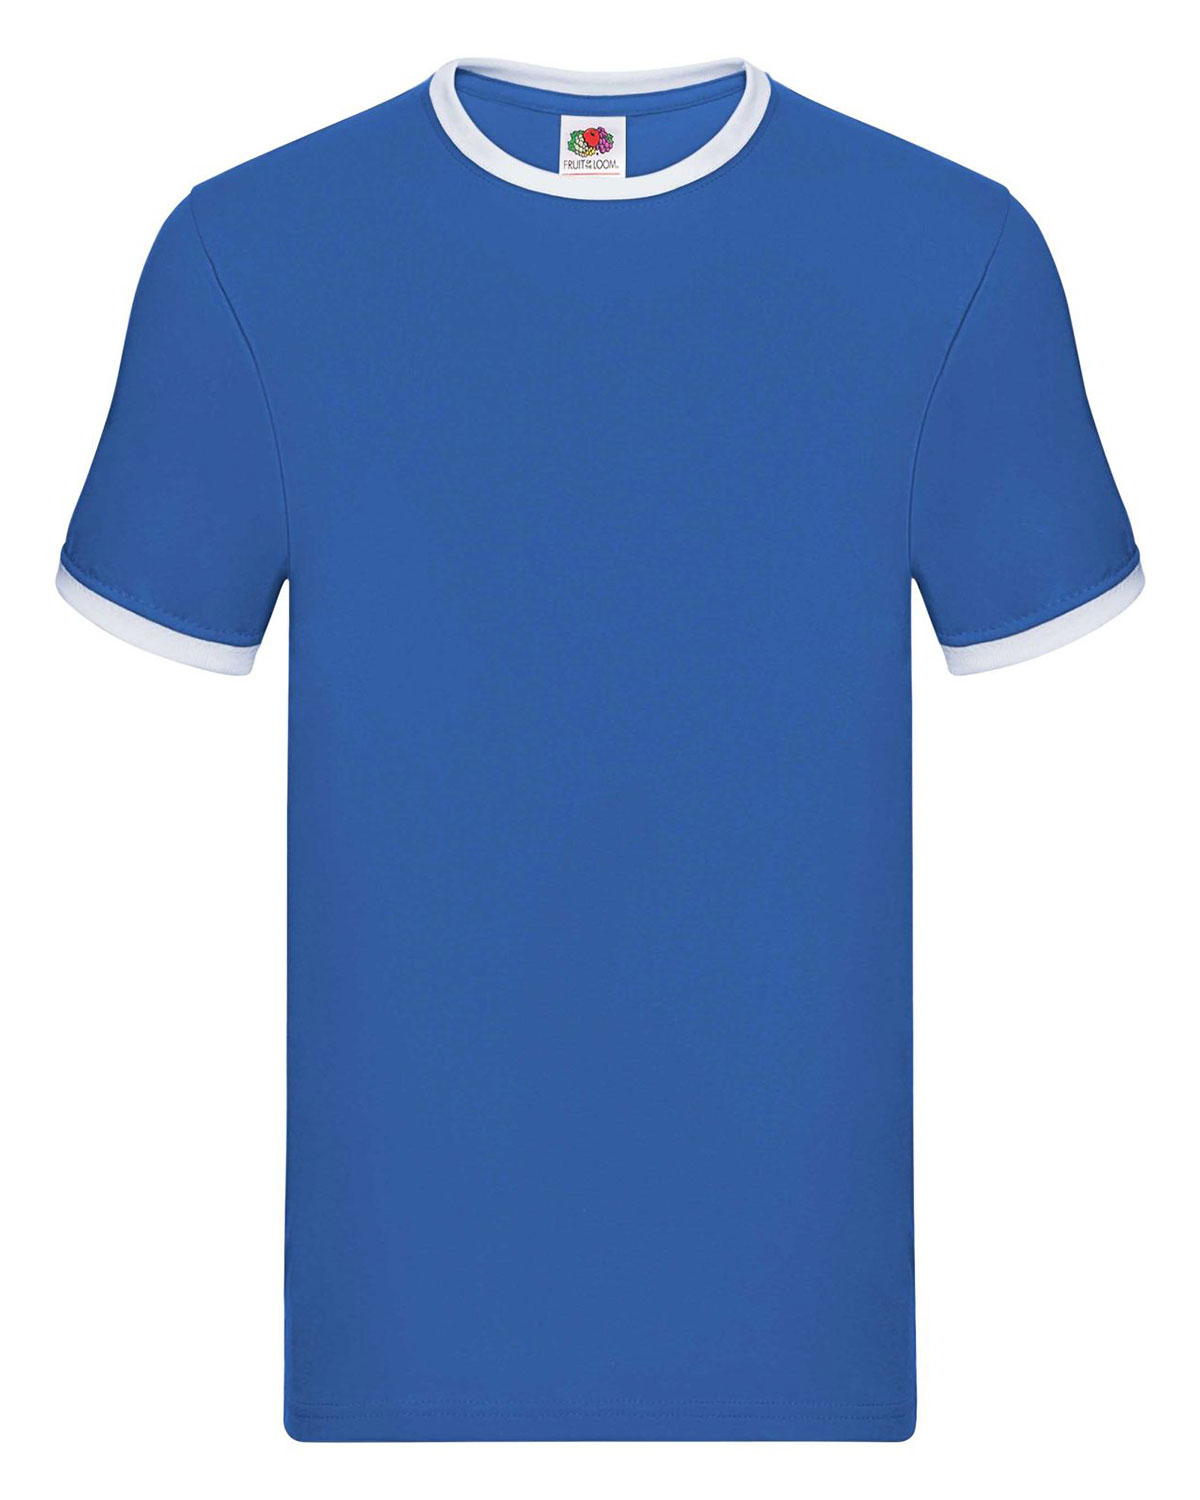 Ringer T-Shirt Royal Blue/White XXL